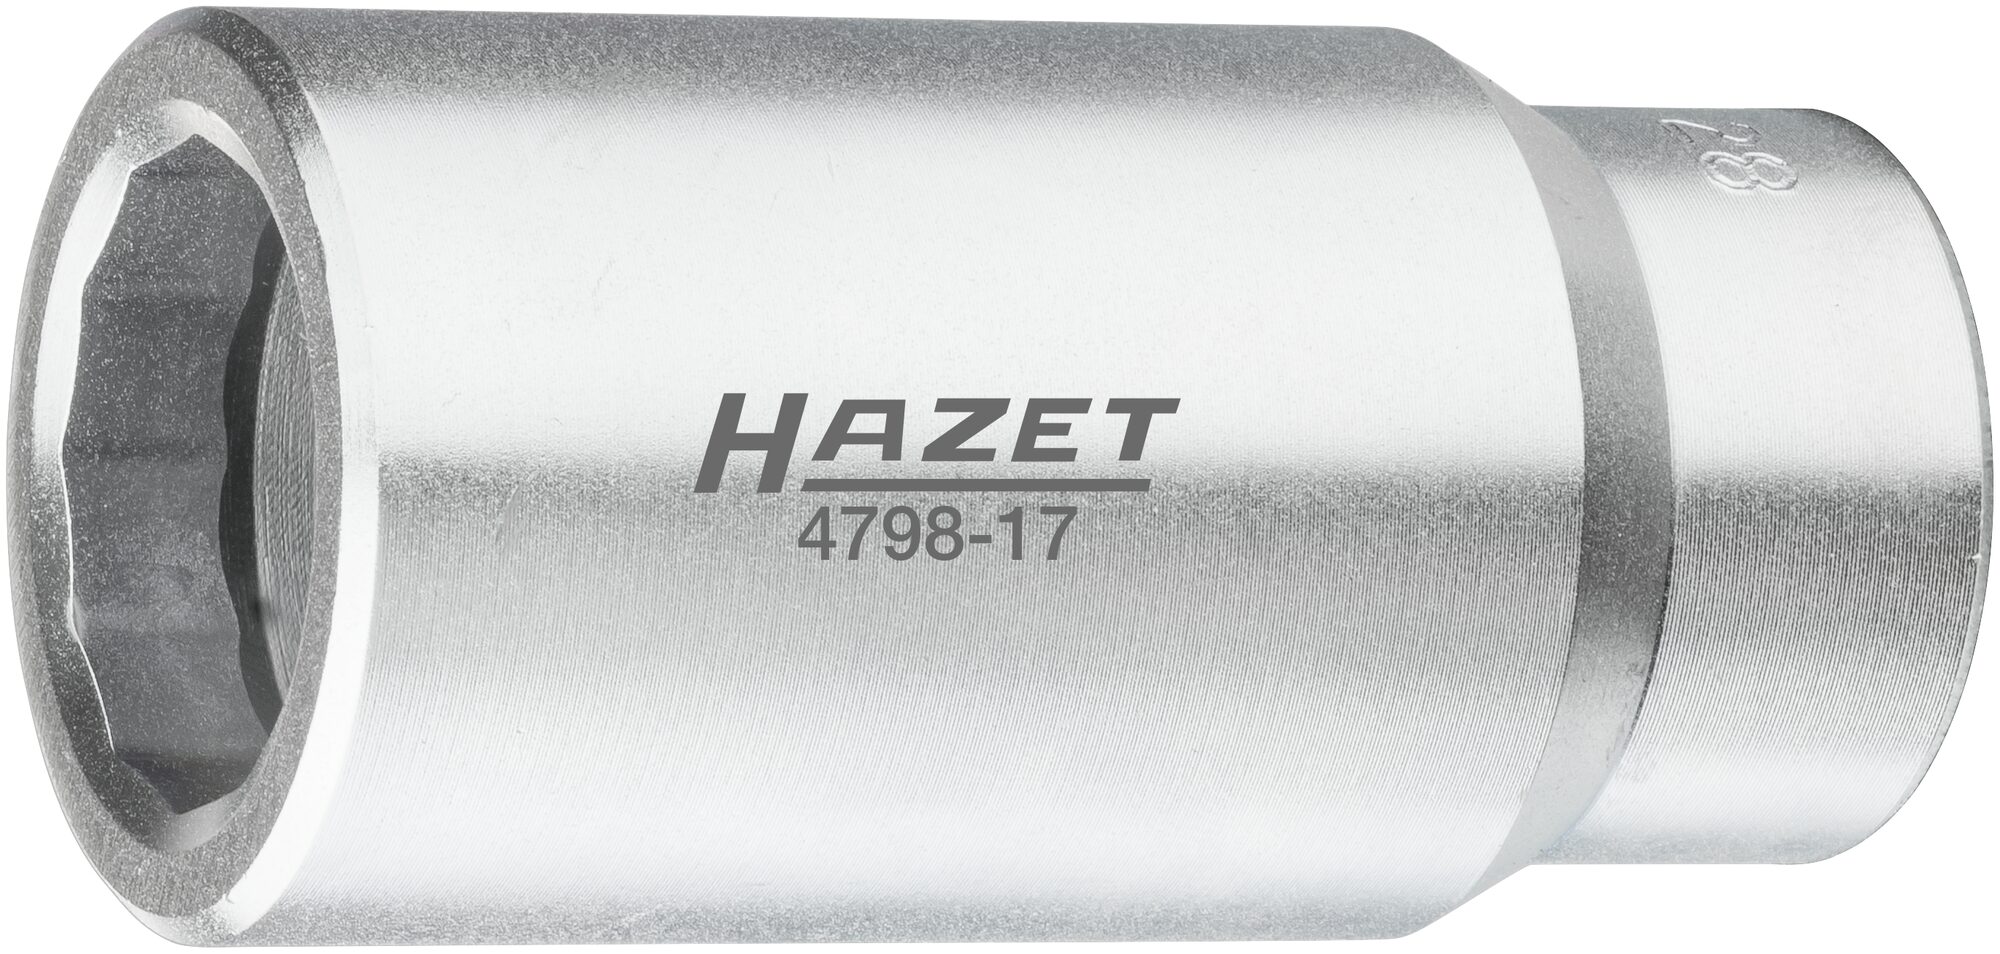 HAZET Injektor Steckschlüsseleinsatz Bosch s 28 mm 4798-17 · Vierkant hohl 12,5 mm (1/2 Zoll) · 28 mm